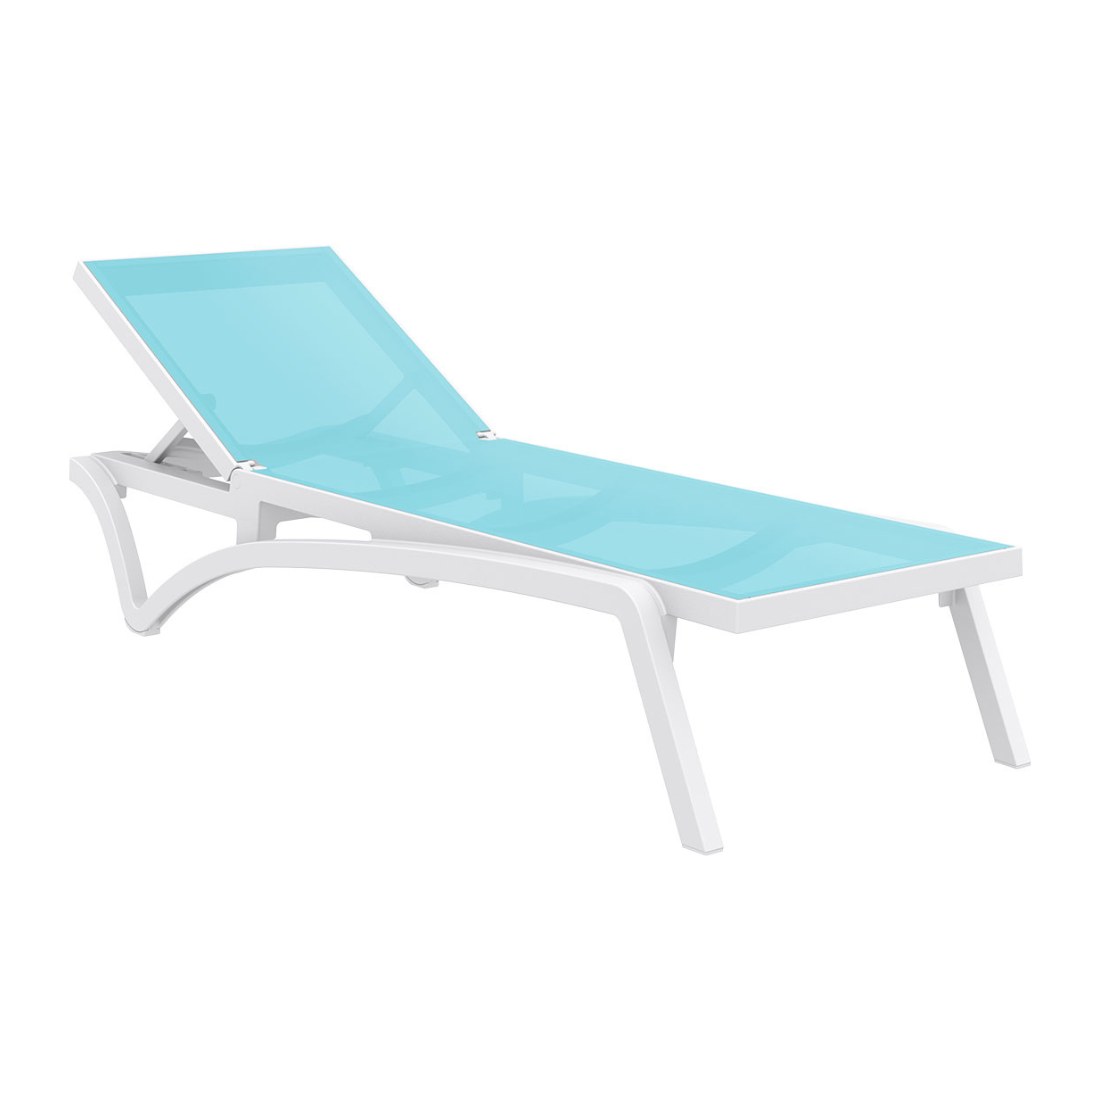 Siesta Pacific Sonnenliege aus Kunststoff mit rutschfesten Füßen und Rädern, Farbe: Turquoise/Weiß